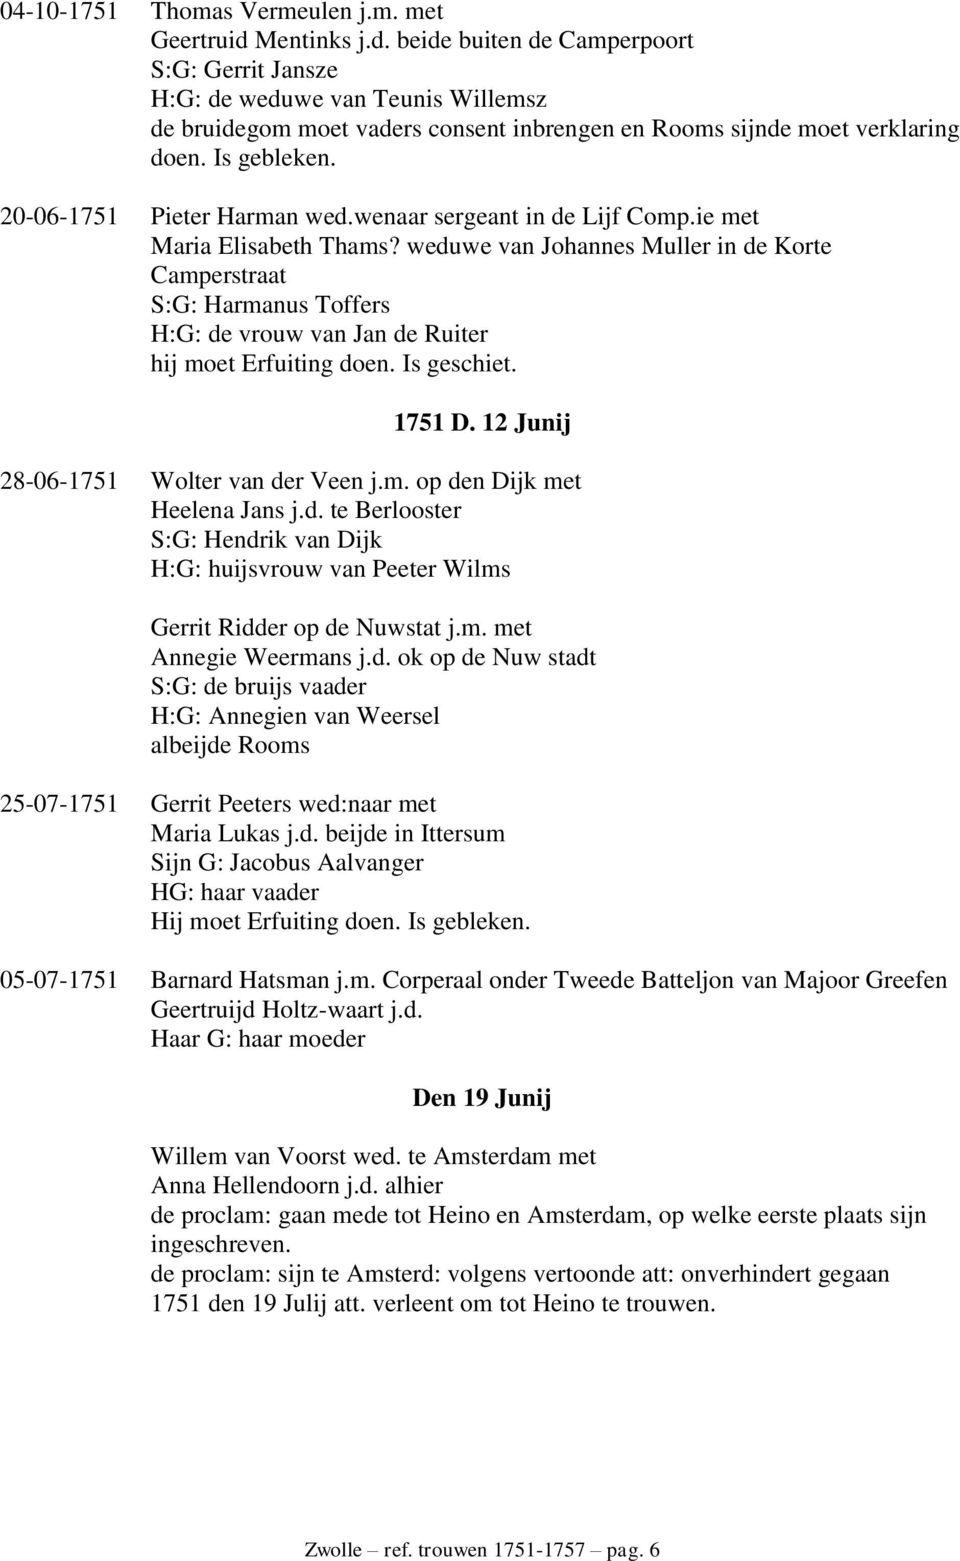 20-06-1751 Pieter Harman wed.wenaar sergeant in de Lijf Comp.ie met Maria Elisabeth Thams?